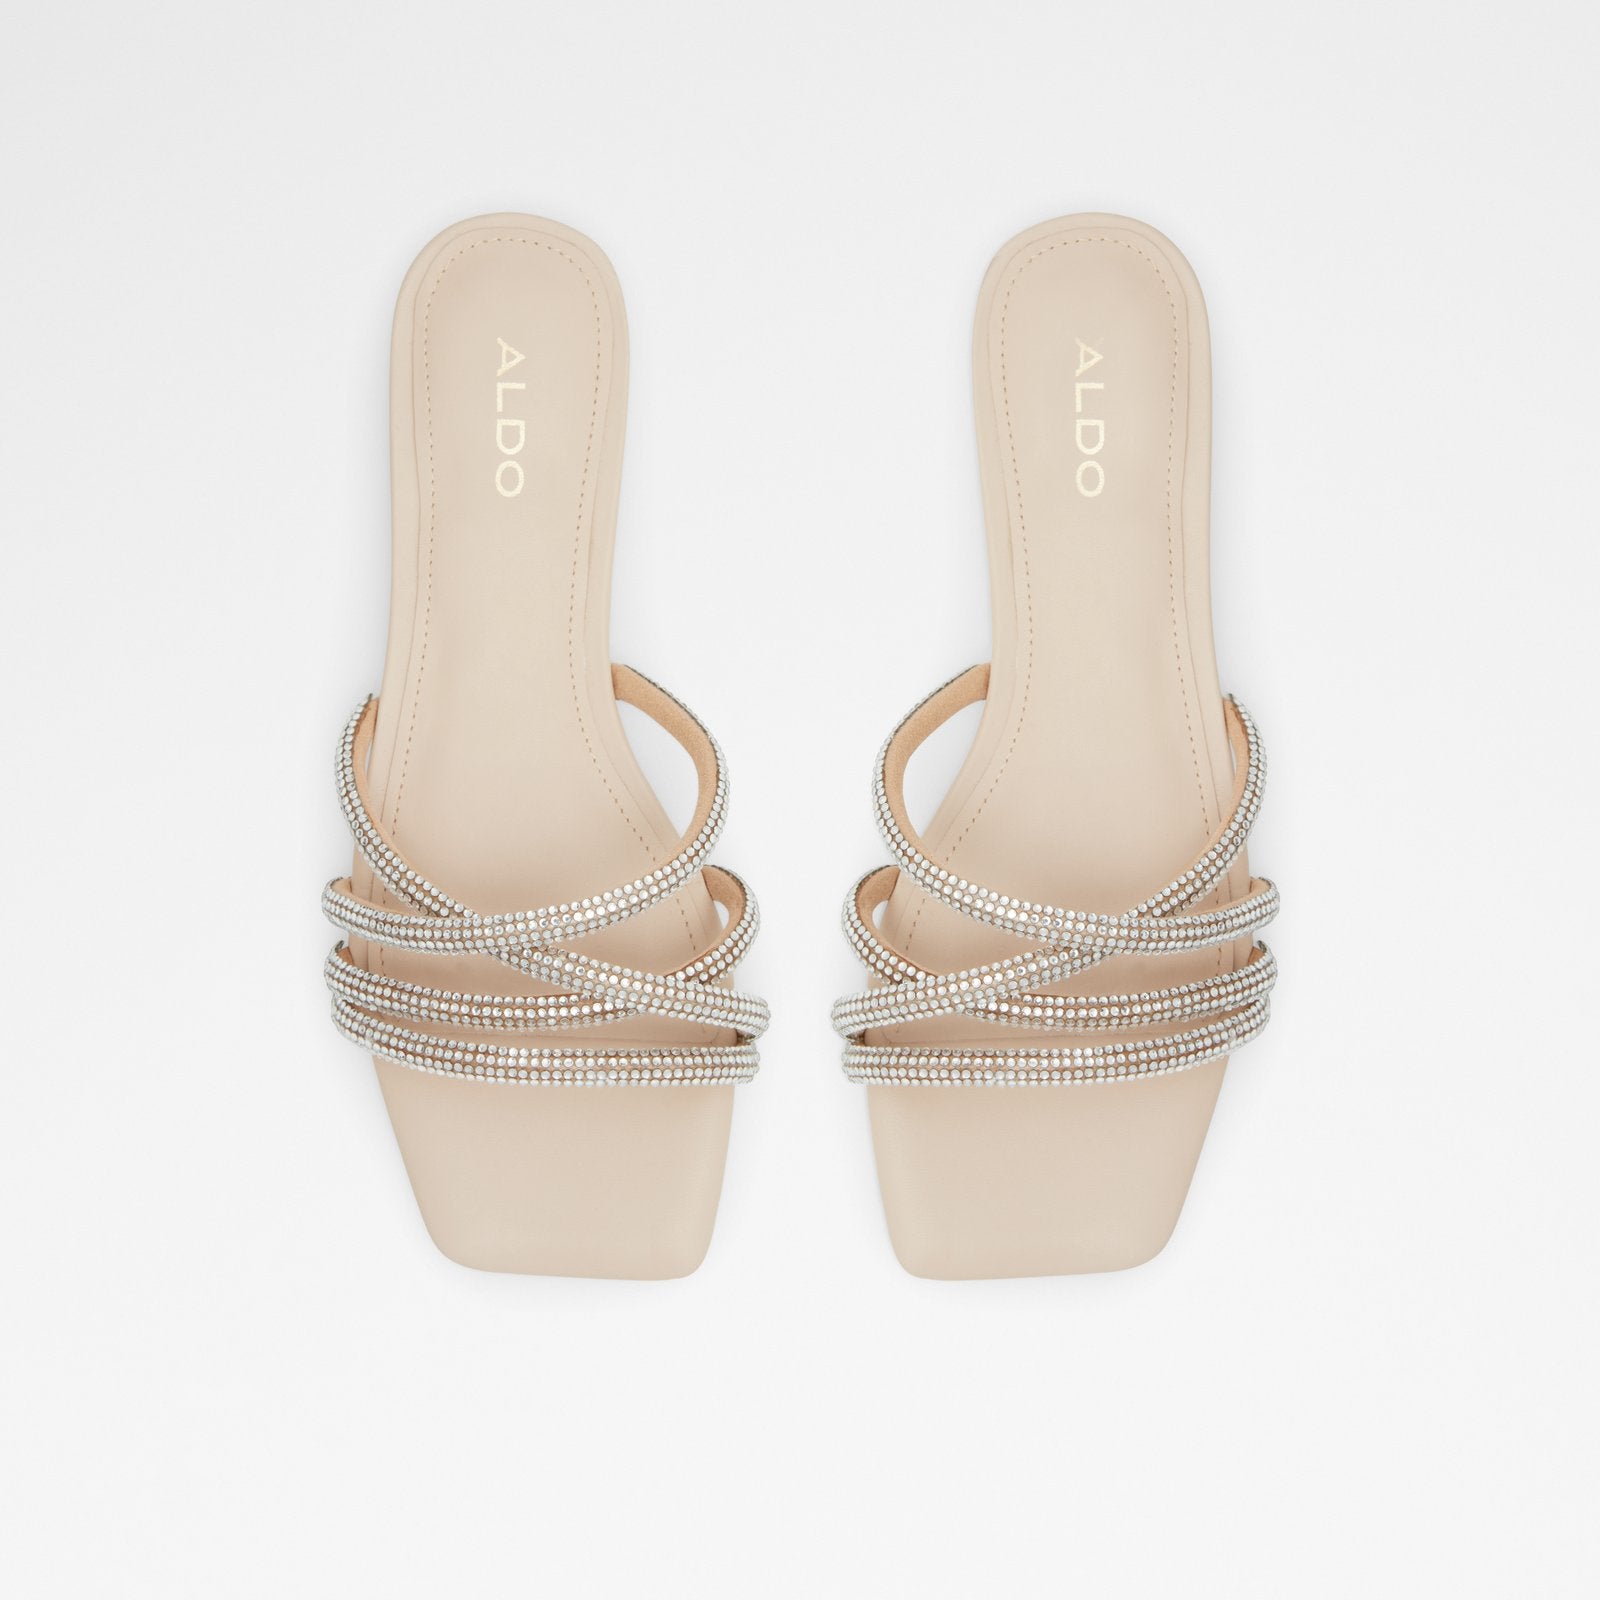 Rossie / Occasion Women Shoes - Light Beige - ALDO KSA